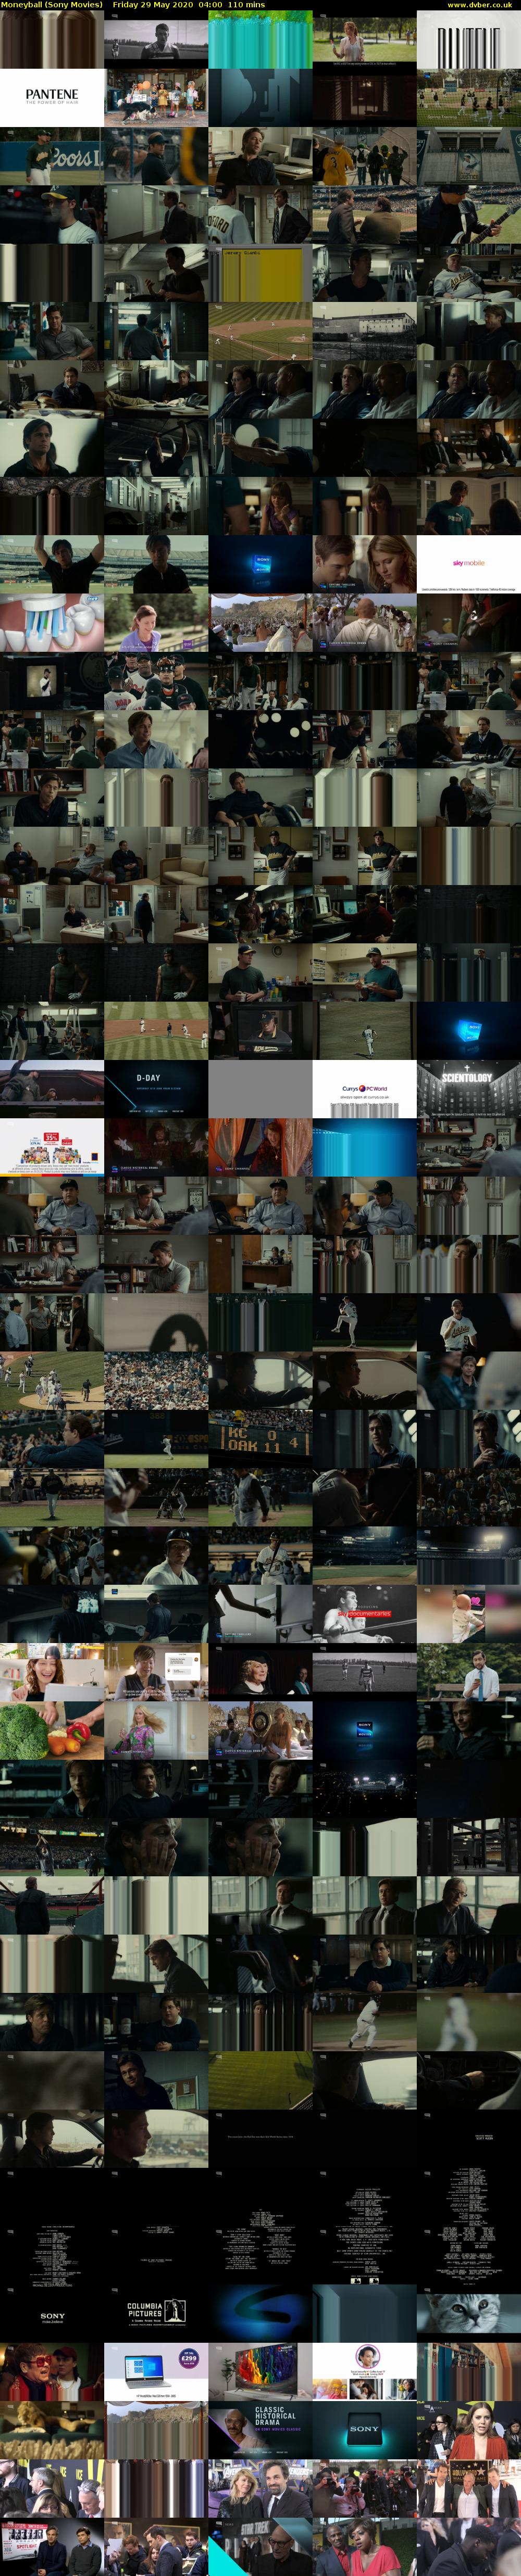 Moneyball (Sony Movies) Friday 29 May 2020 04:00 - 05:50